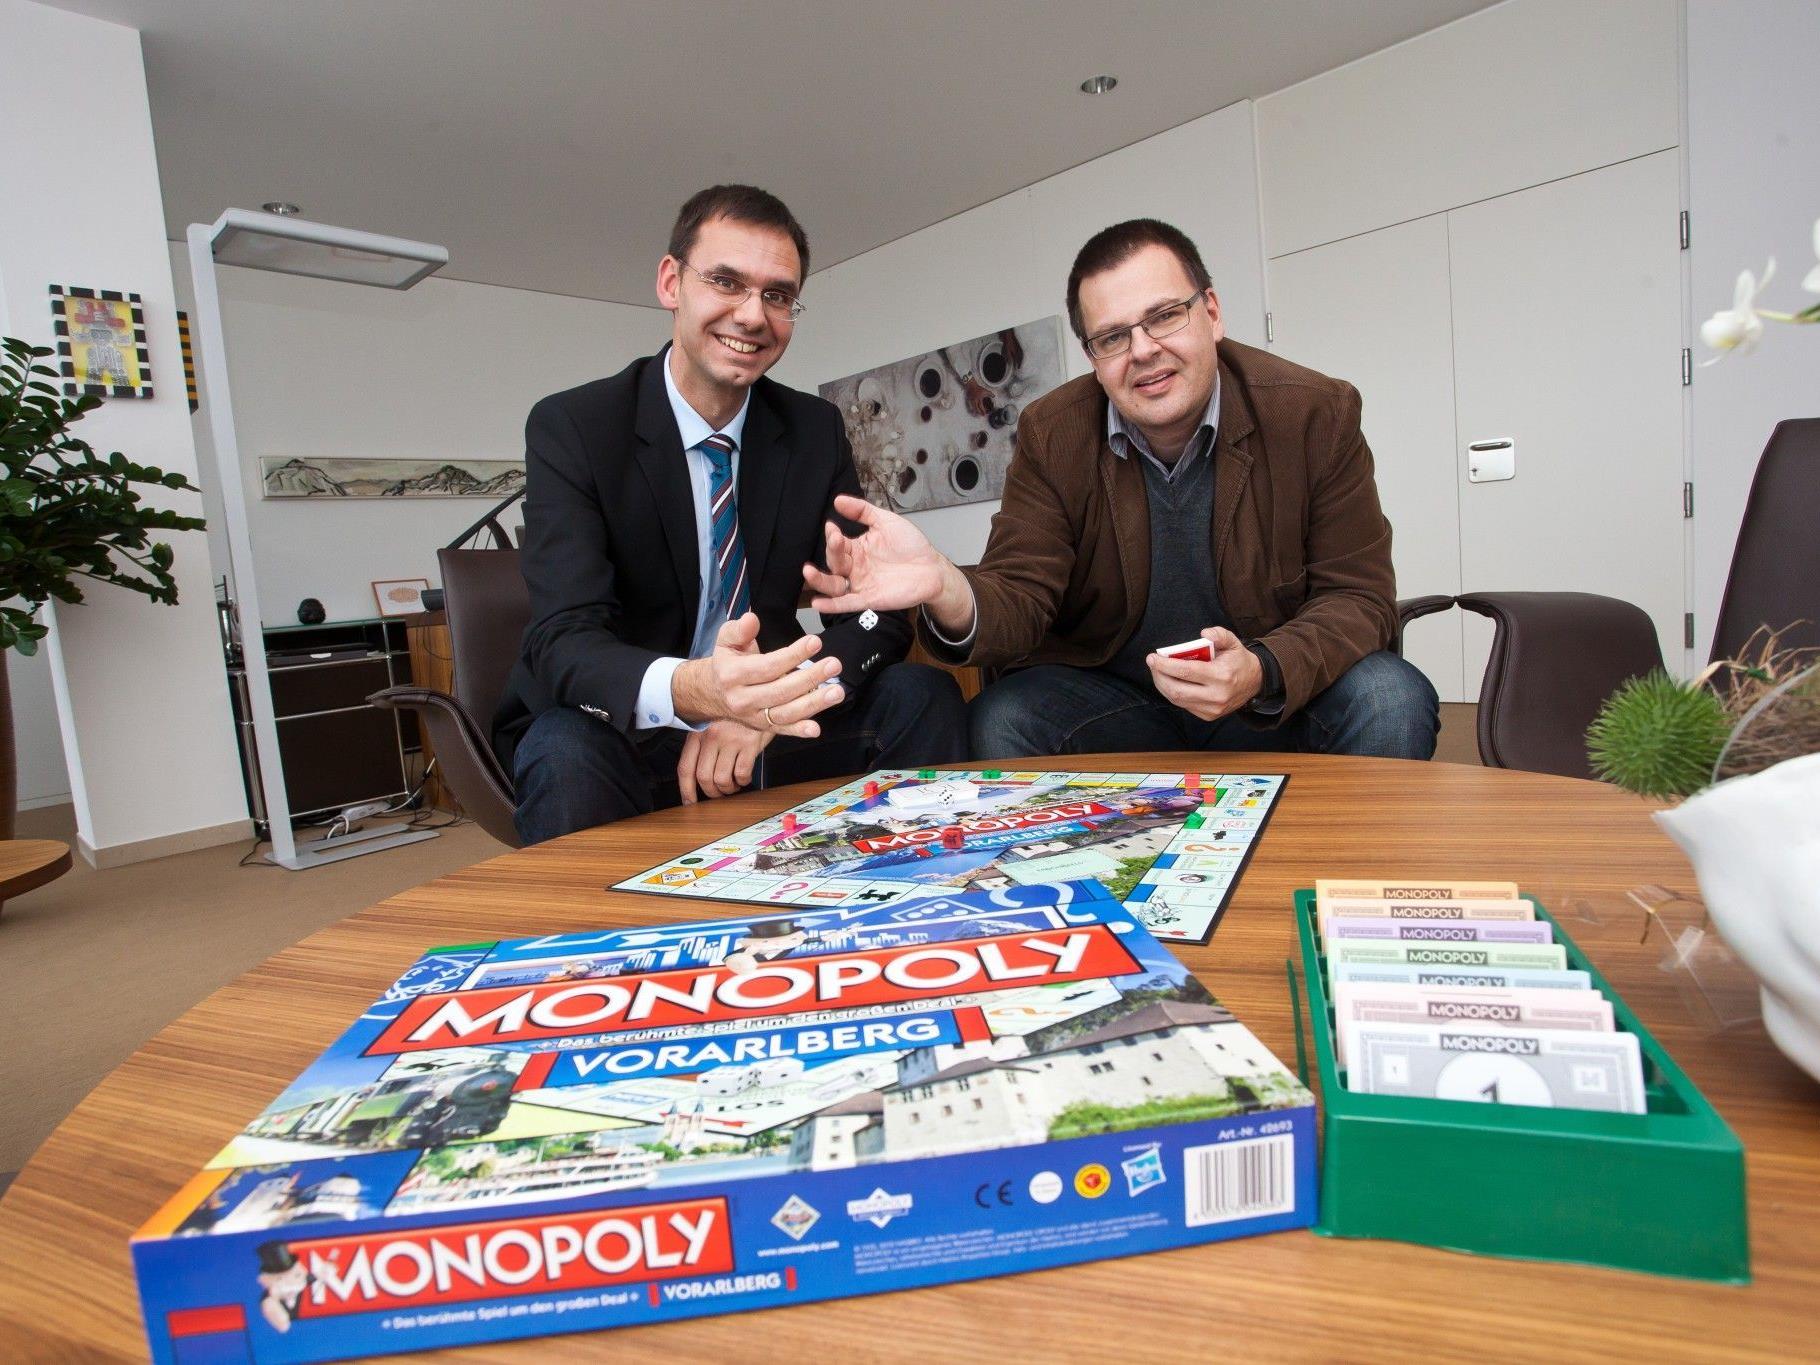 Monopoly mit Vorarlberger Straßennamen: LH Wallner zeigt sich begeistert.